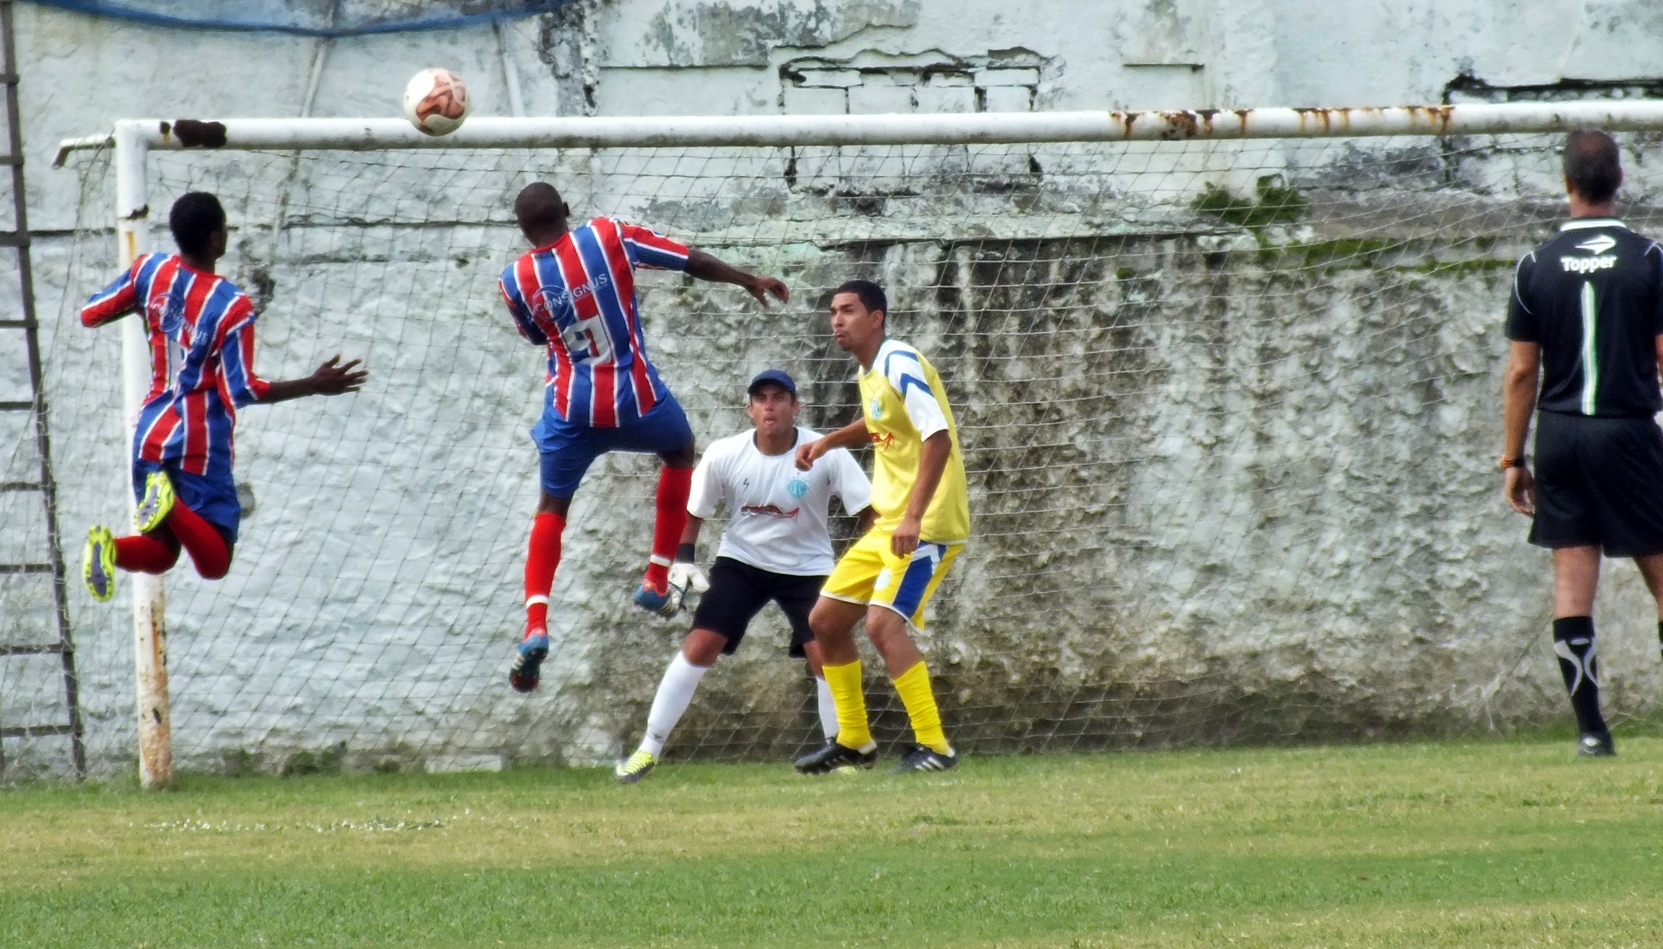 Amparo venceu por 3 a 0 o time do Bairro da Amizade. (Foto: João Henrique | Maricá Info)